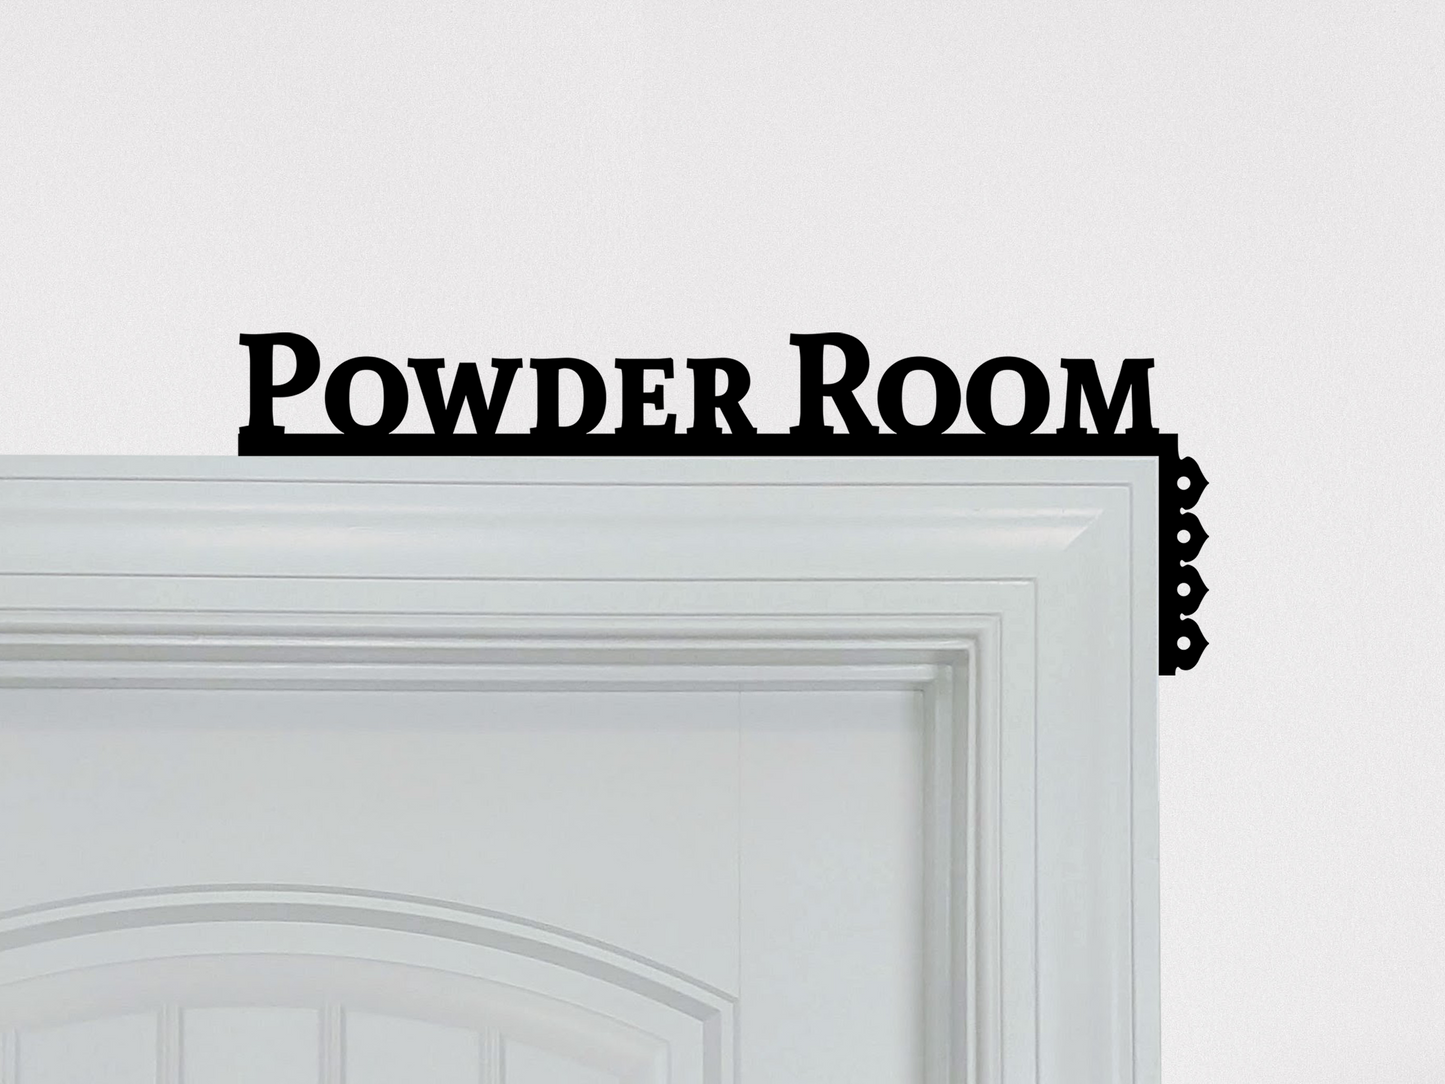 Powder Room Door Topper Corner Sign